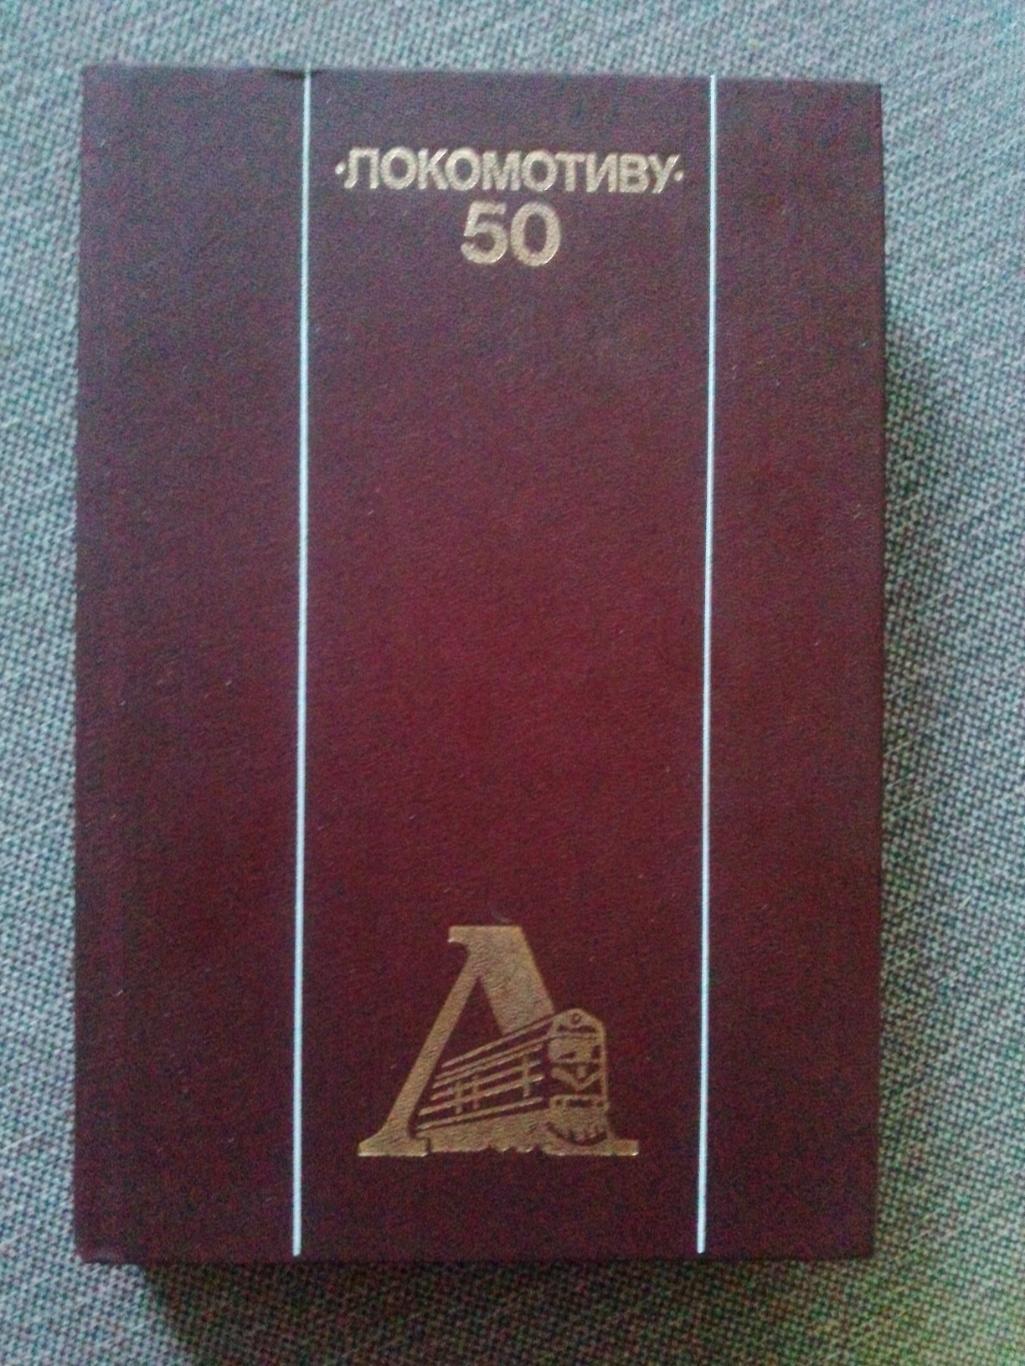 Спортобществу Локомотив - 50 лет 1988 г.ФиССпорт Футбол Спортобщество